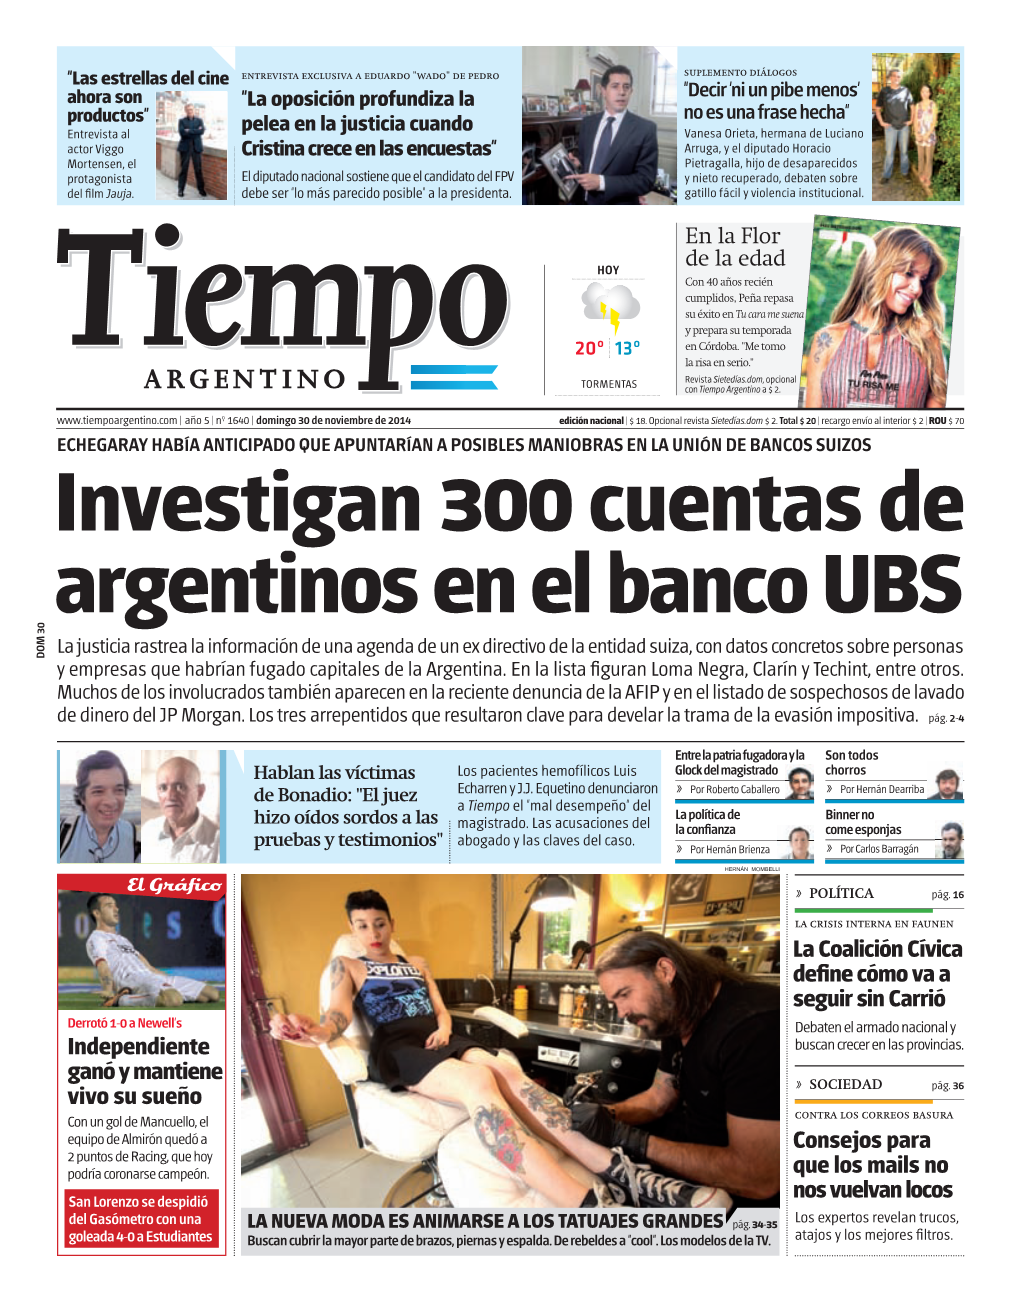 Investigan 300 Cuentas De Argentinos En El Banco